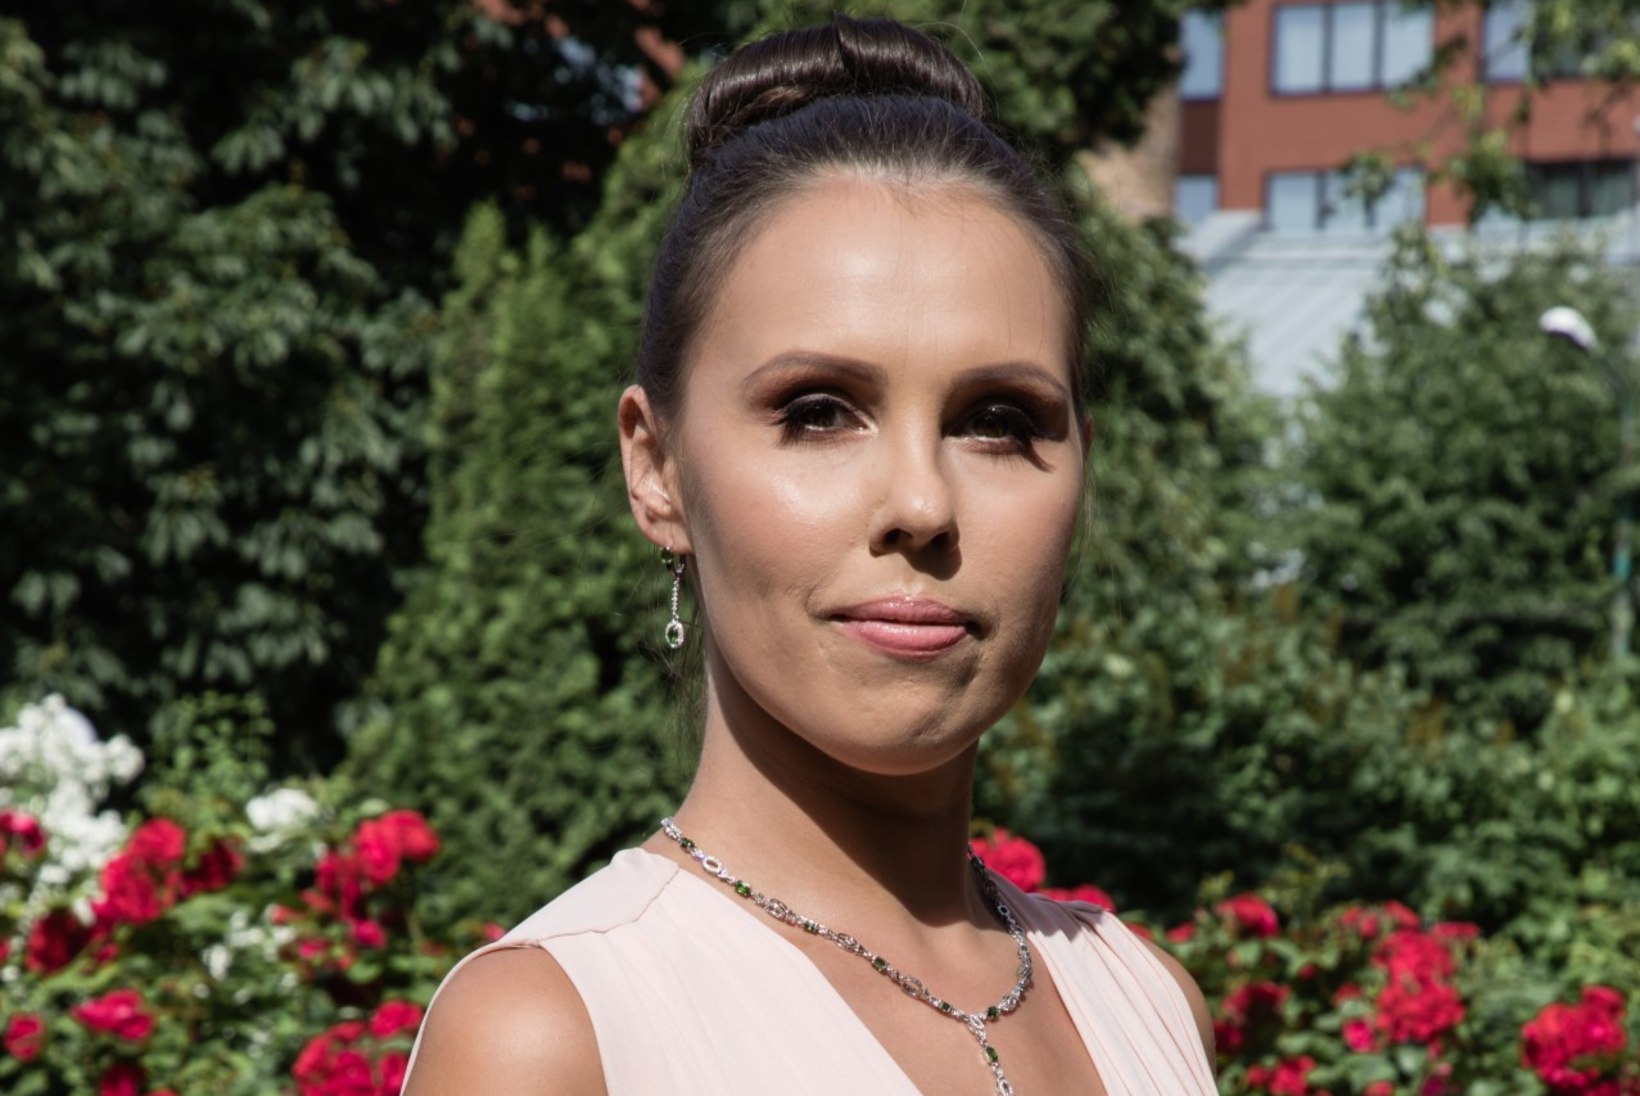 PILDID JA VIDEOD | Missis Estonia 2019 kandidaadid on stardivalmis! Vali oma lemmik!